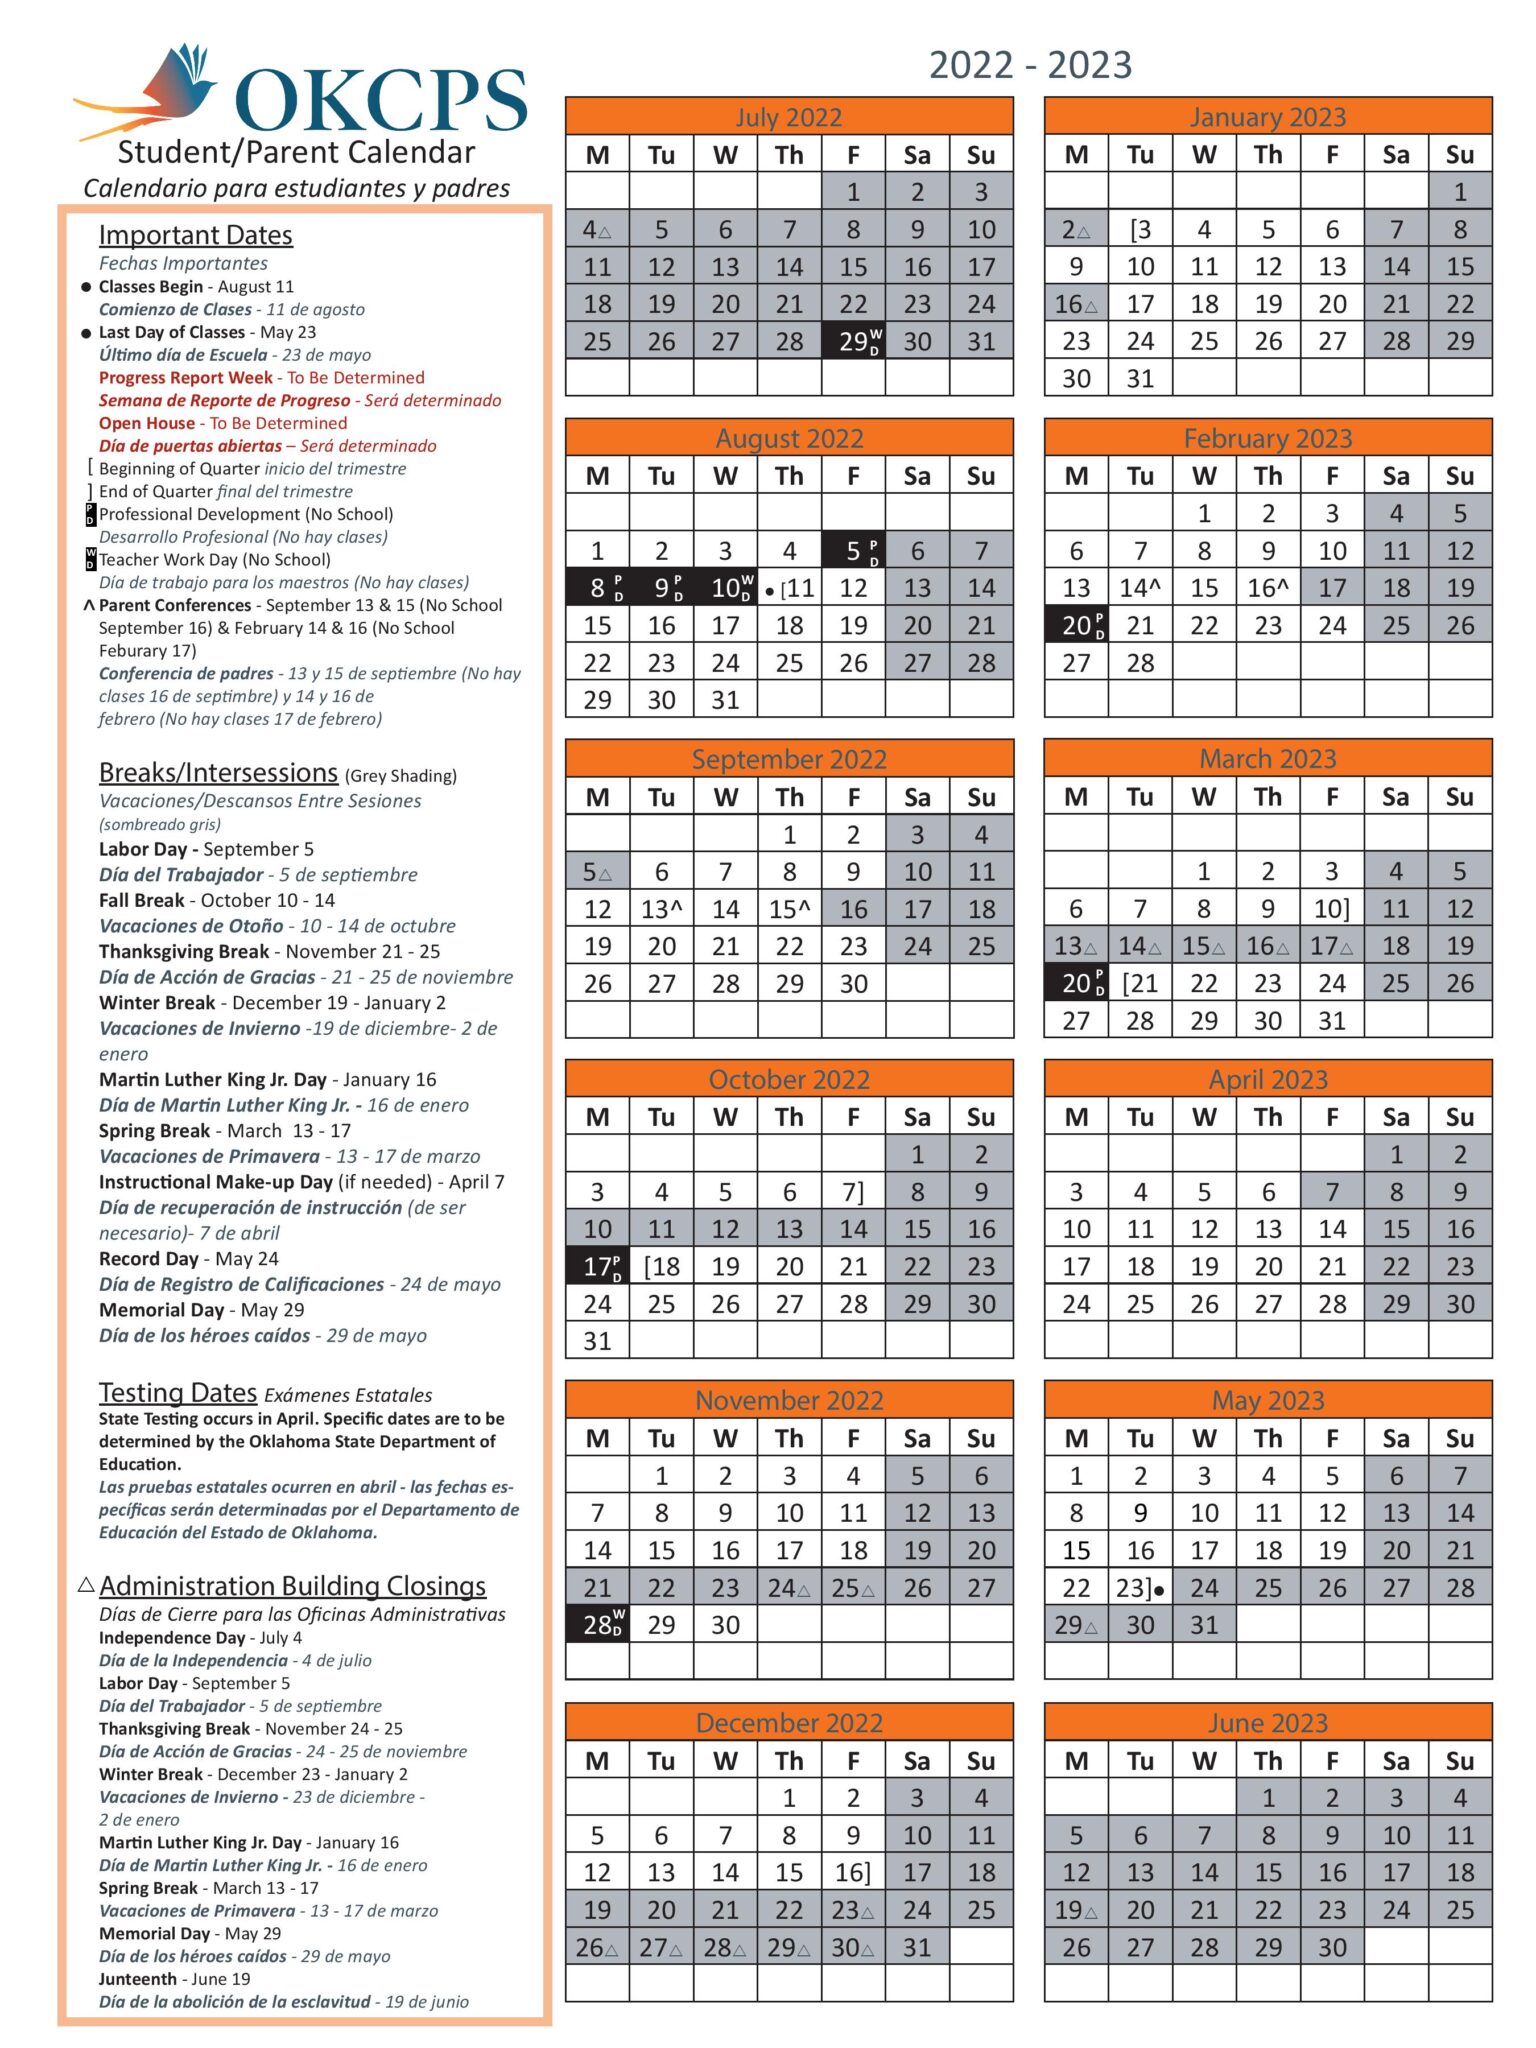 Oklahoma City Public Schools Calendar 20222023 in PDF